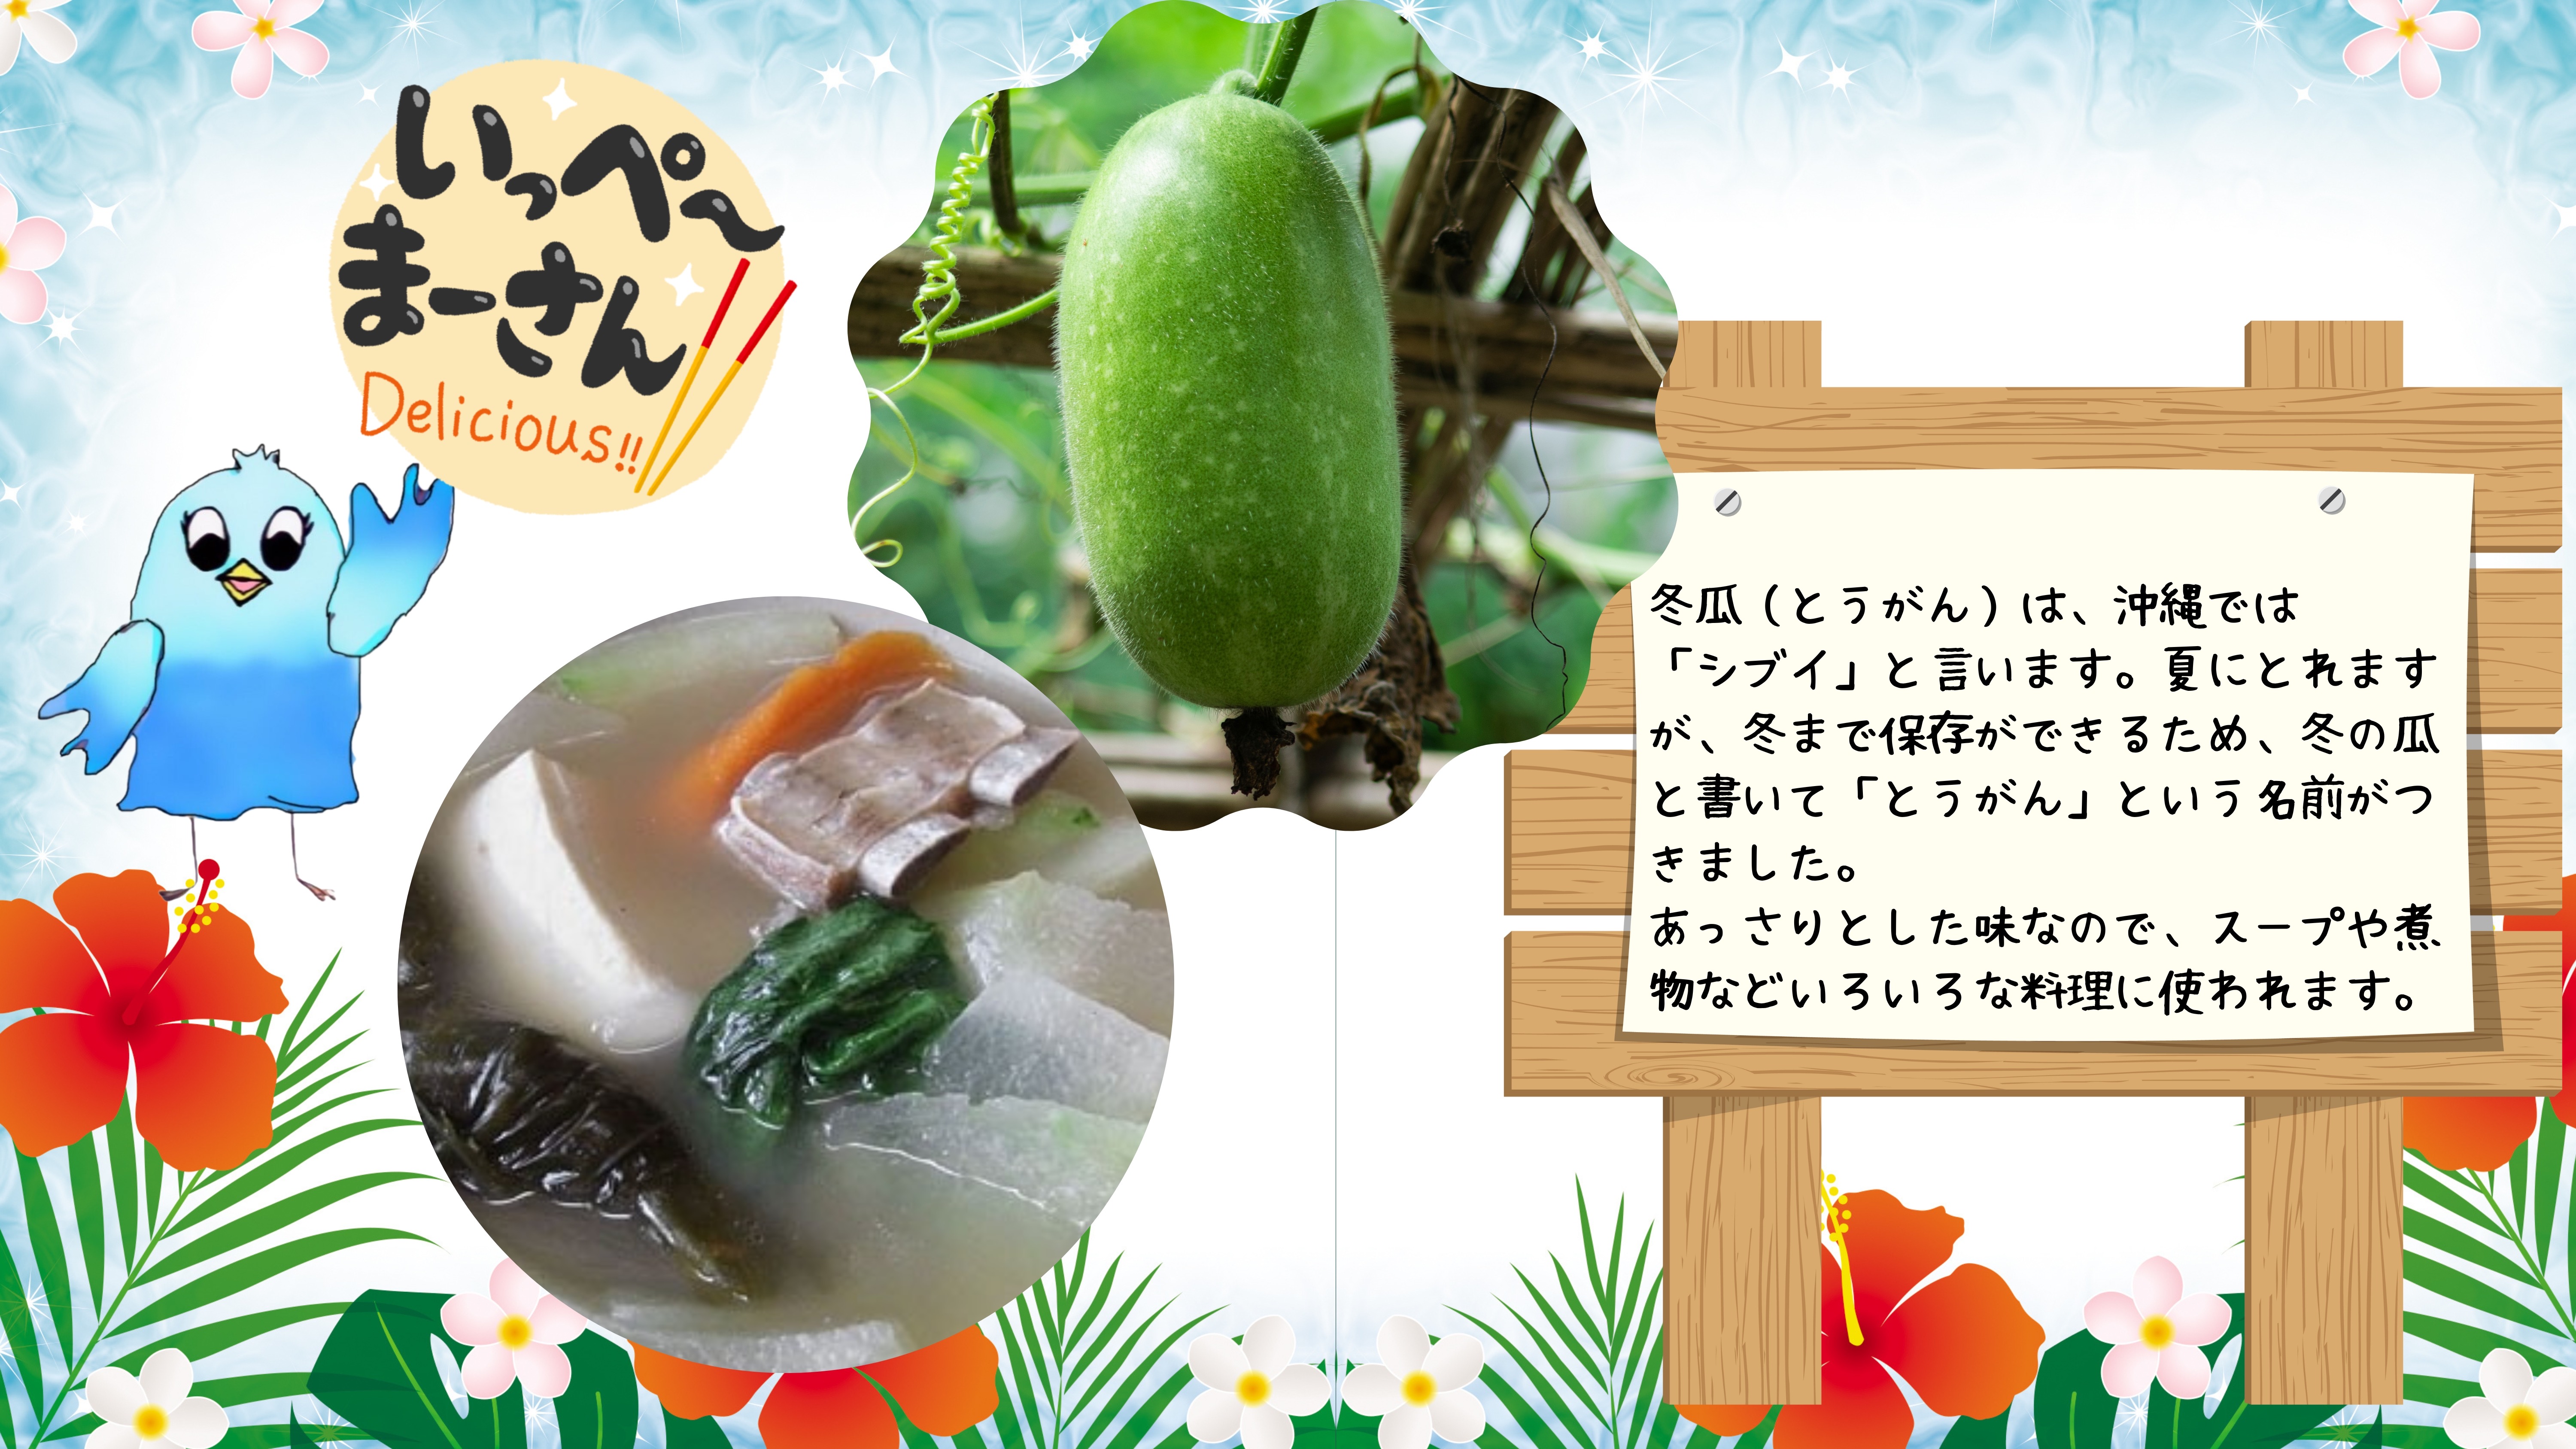 冬瓜（とうがん）は、沖縄では 「シブイ」と言います。夏にとれますが、冬まで保存ができるため、冬の瓜と書いて「とうがん」という名前がつきました。　 あっさりとした味なので、スープや煮物などいろいろな料理に使われます。